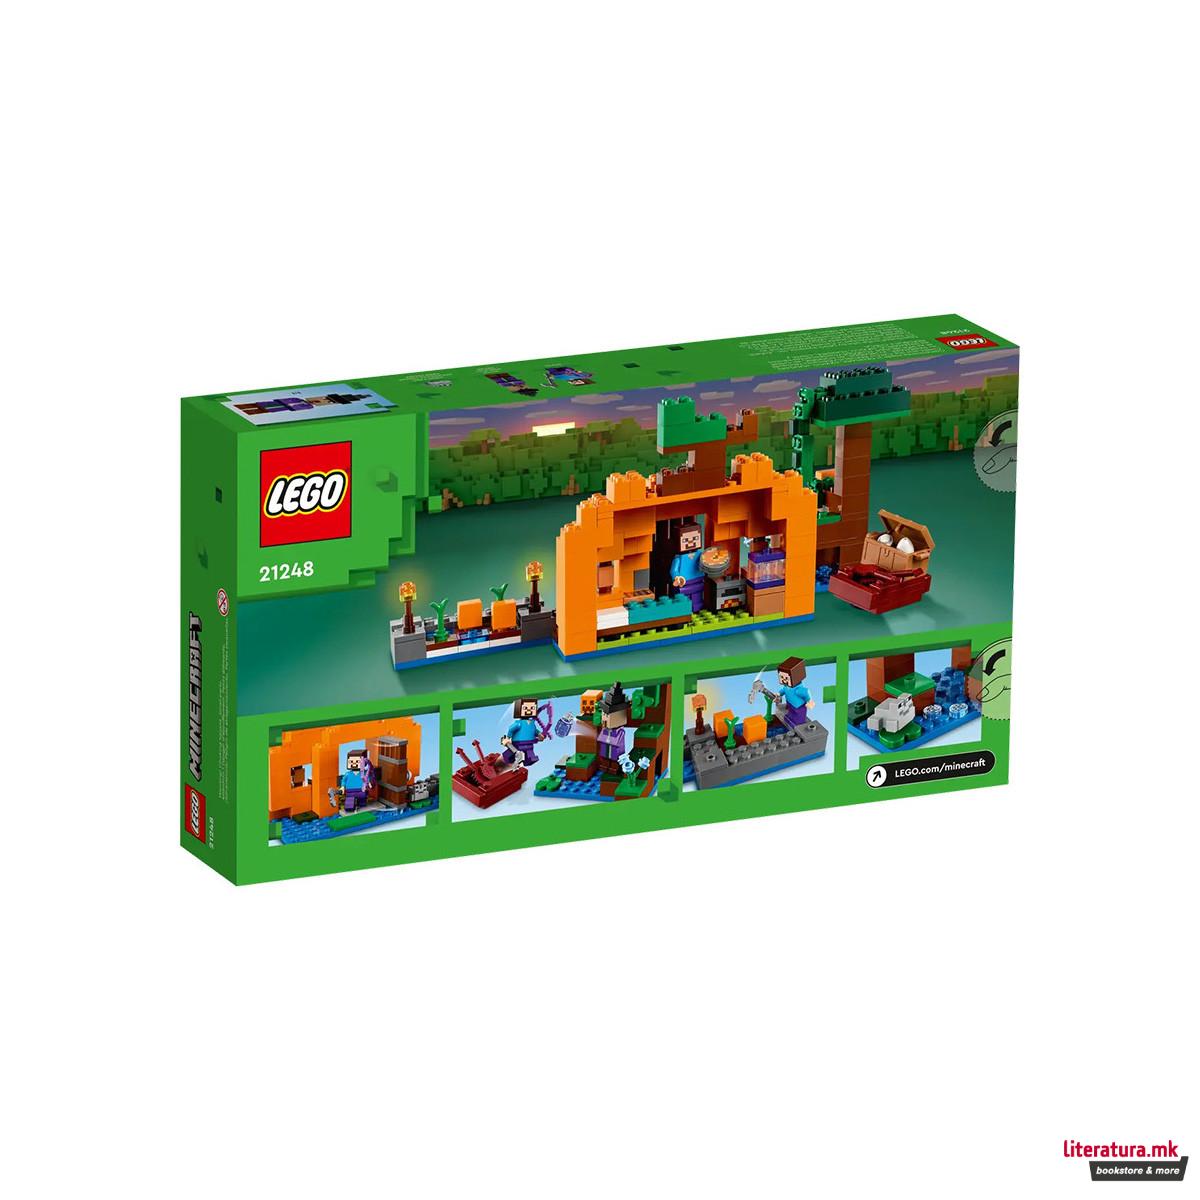 LEGO коцки, Minecraft, The Pumpkin Farm 